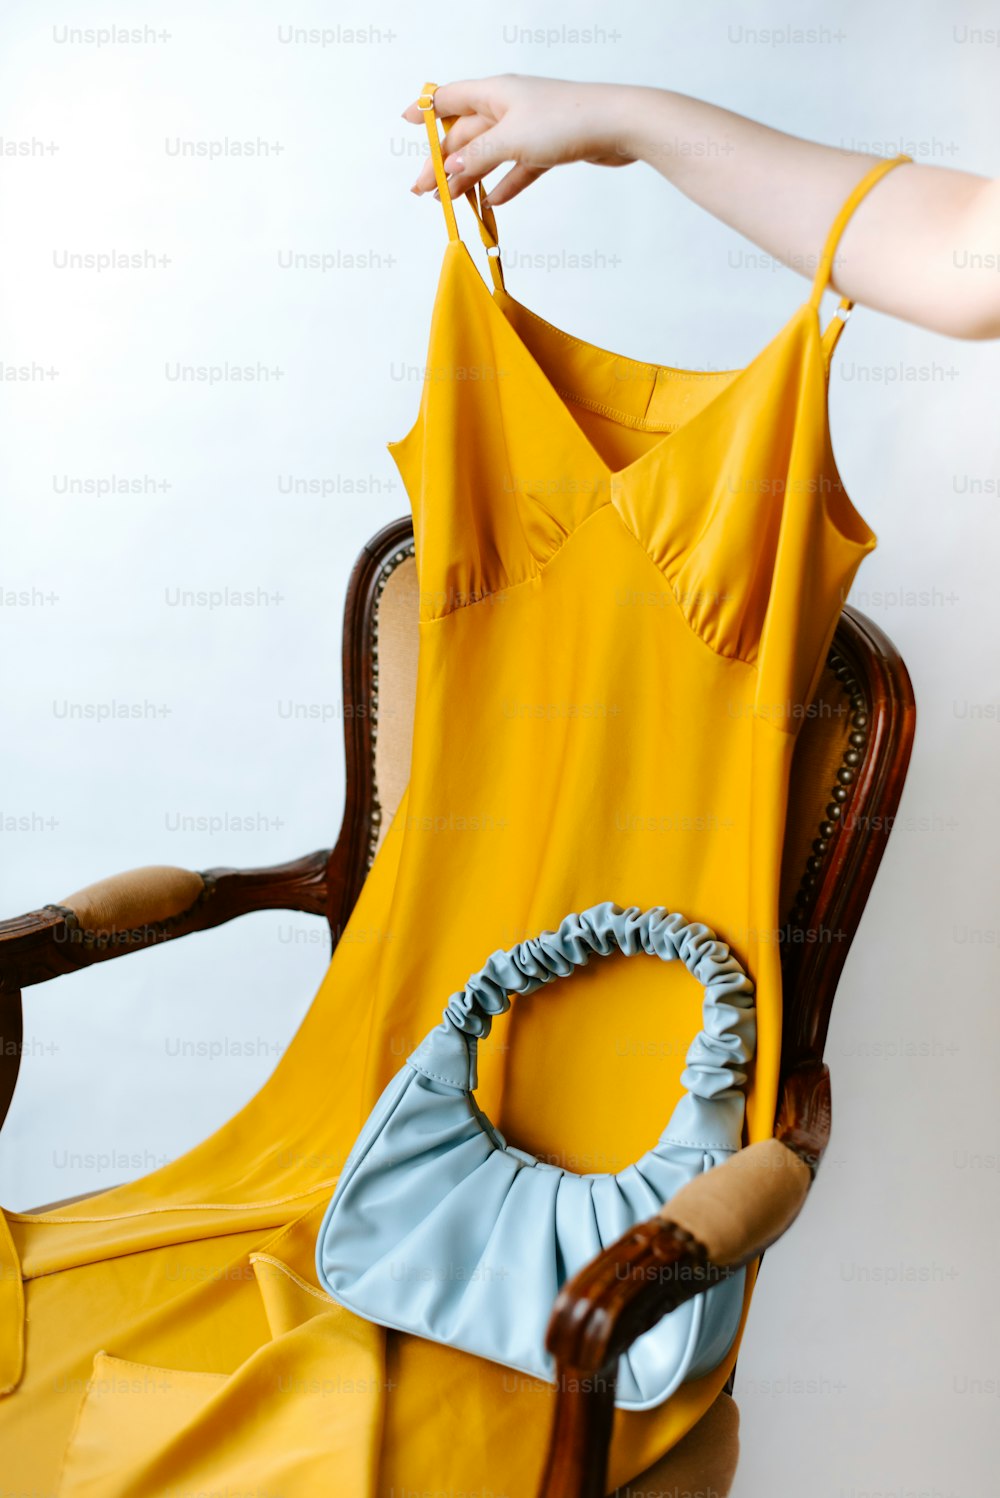 Une femme tient une robe jaune sur une chaise